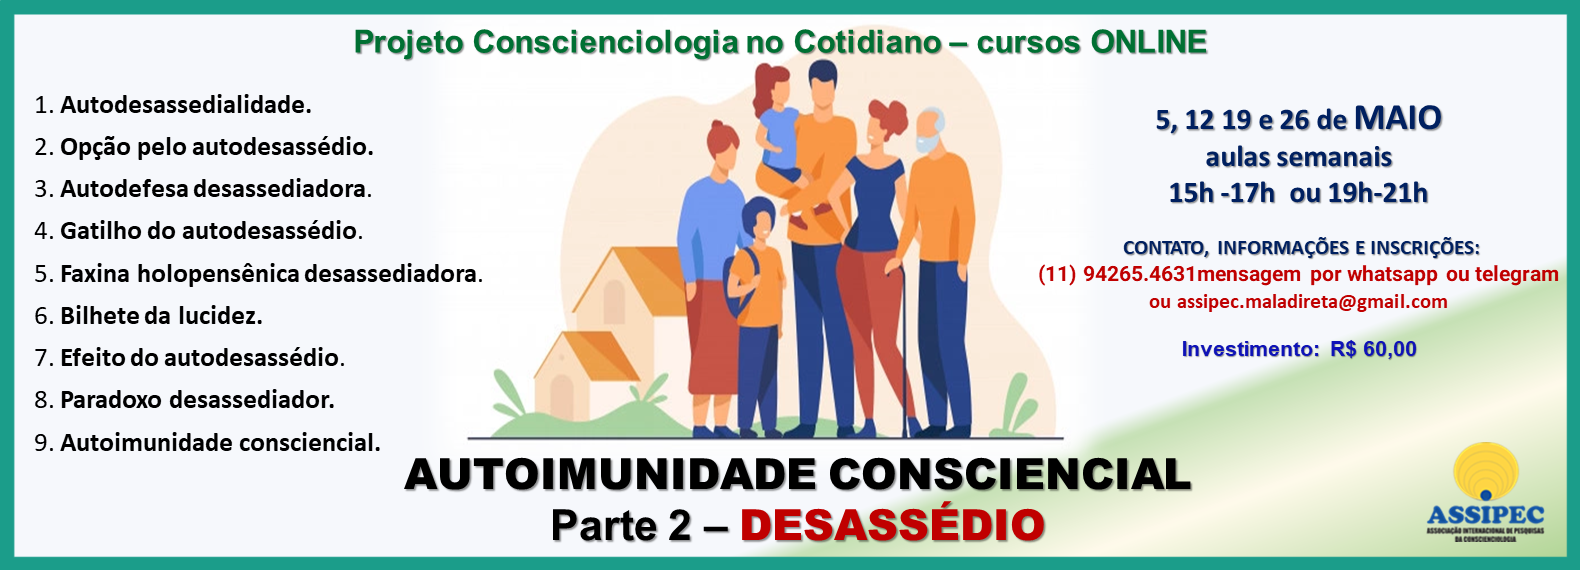 site CCIOLOGIA COTIDIANO MAIO